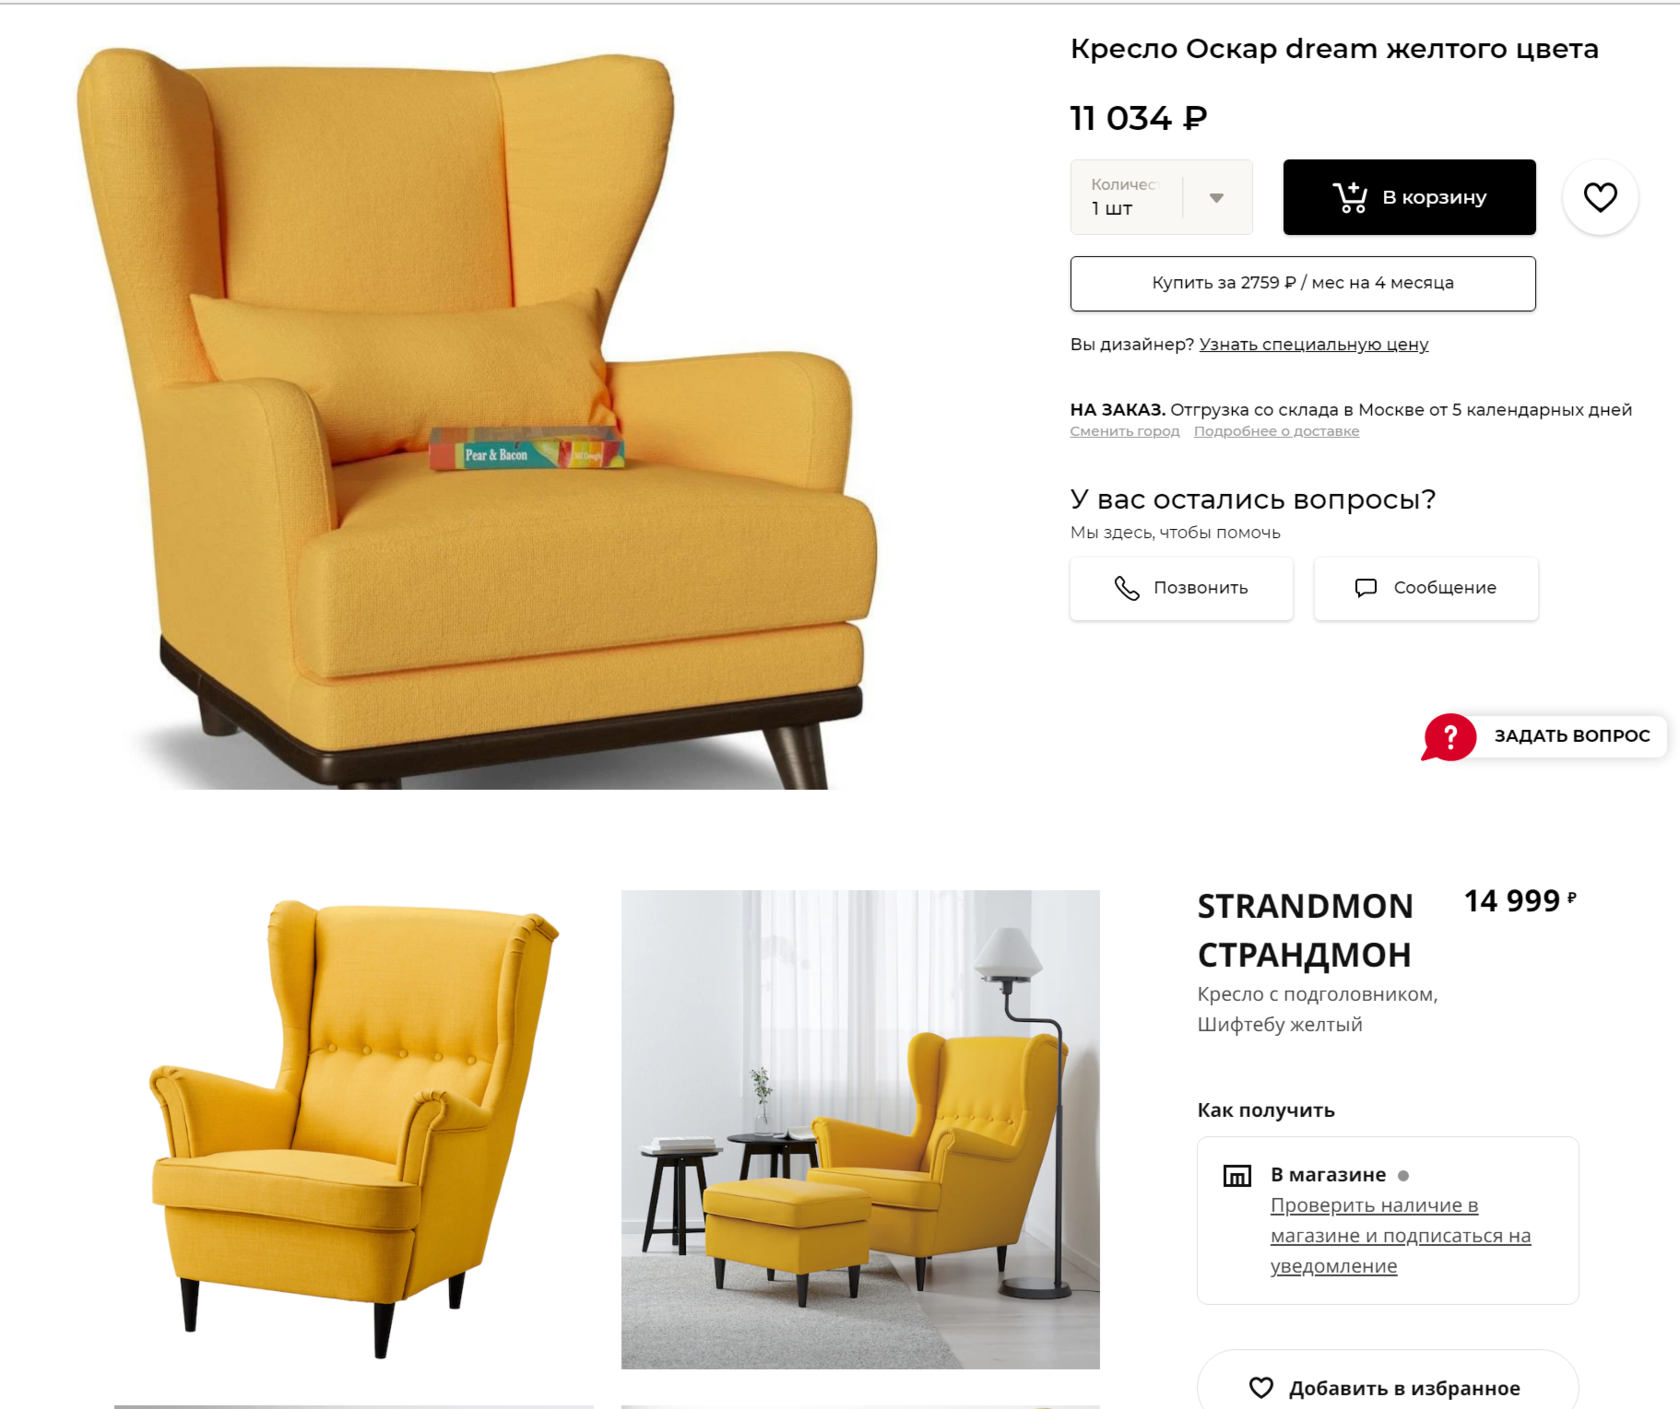 Стол отечественного бренда INMYROOM и кресло из IKEA